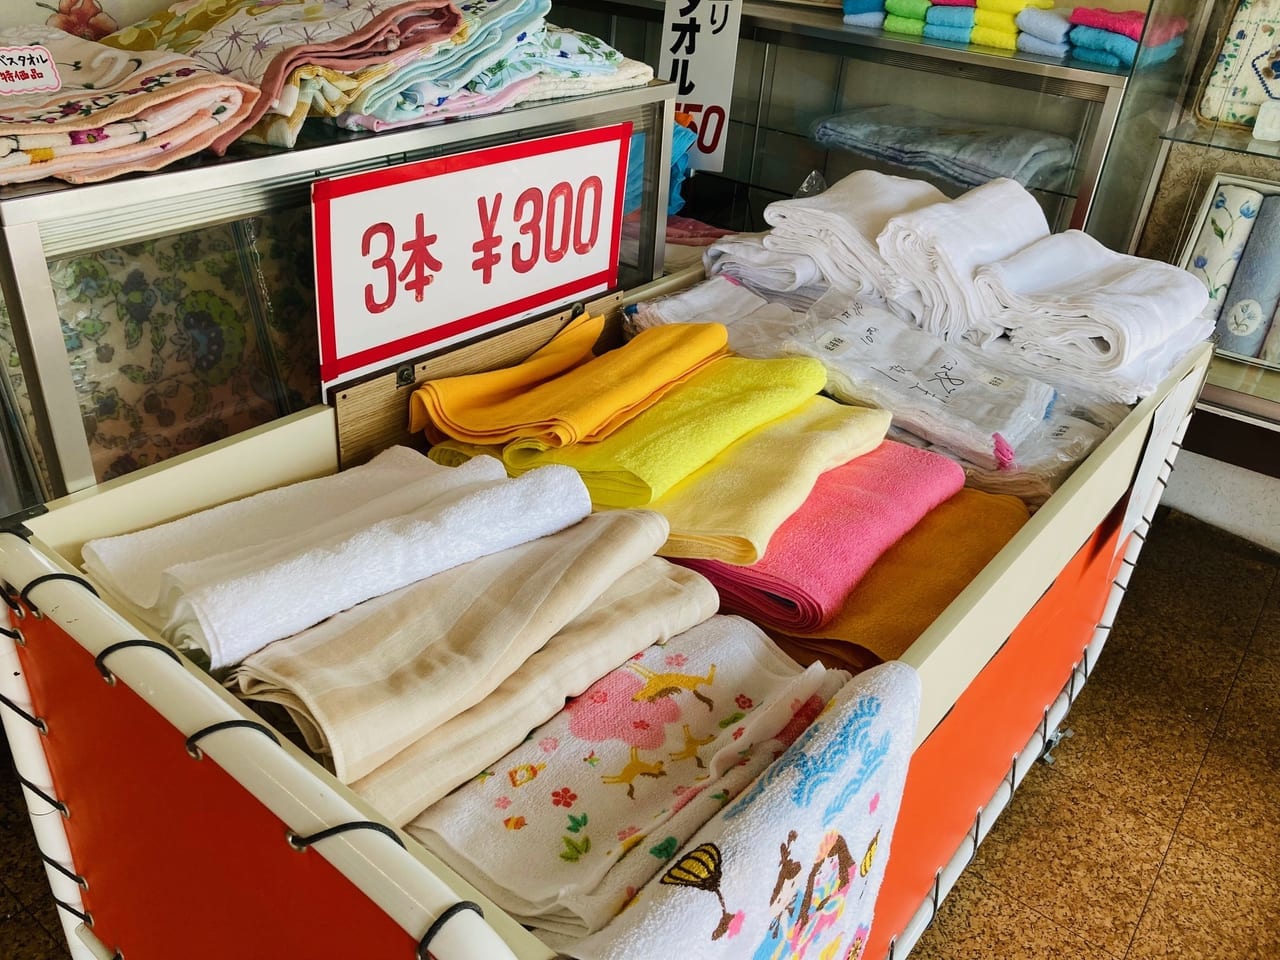 岡田タオル店で販売されているタオル3本300円